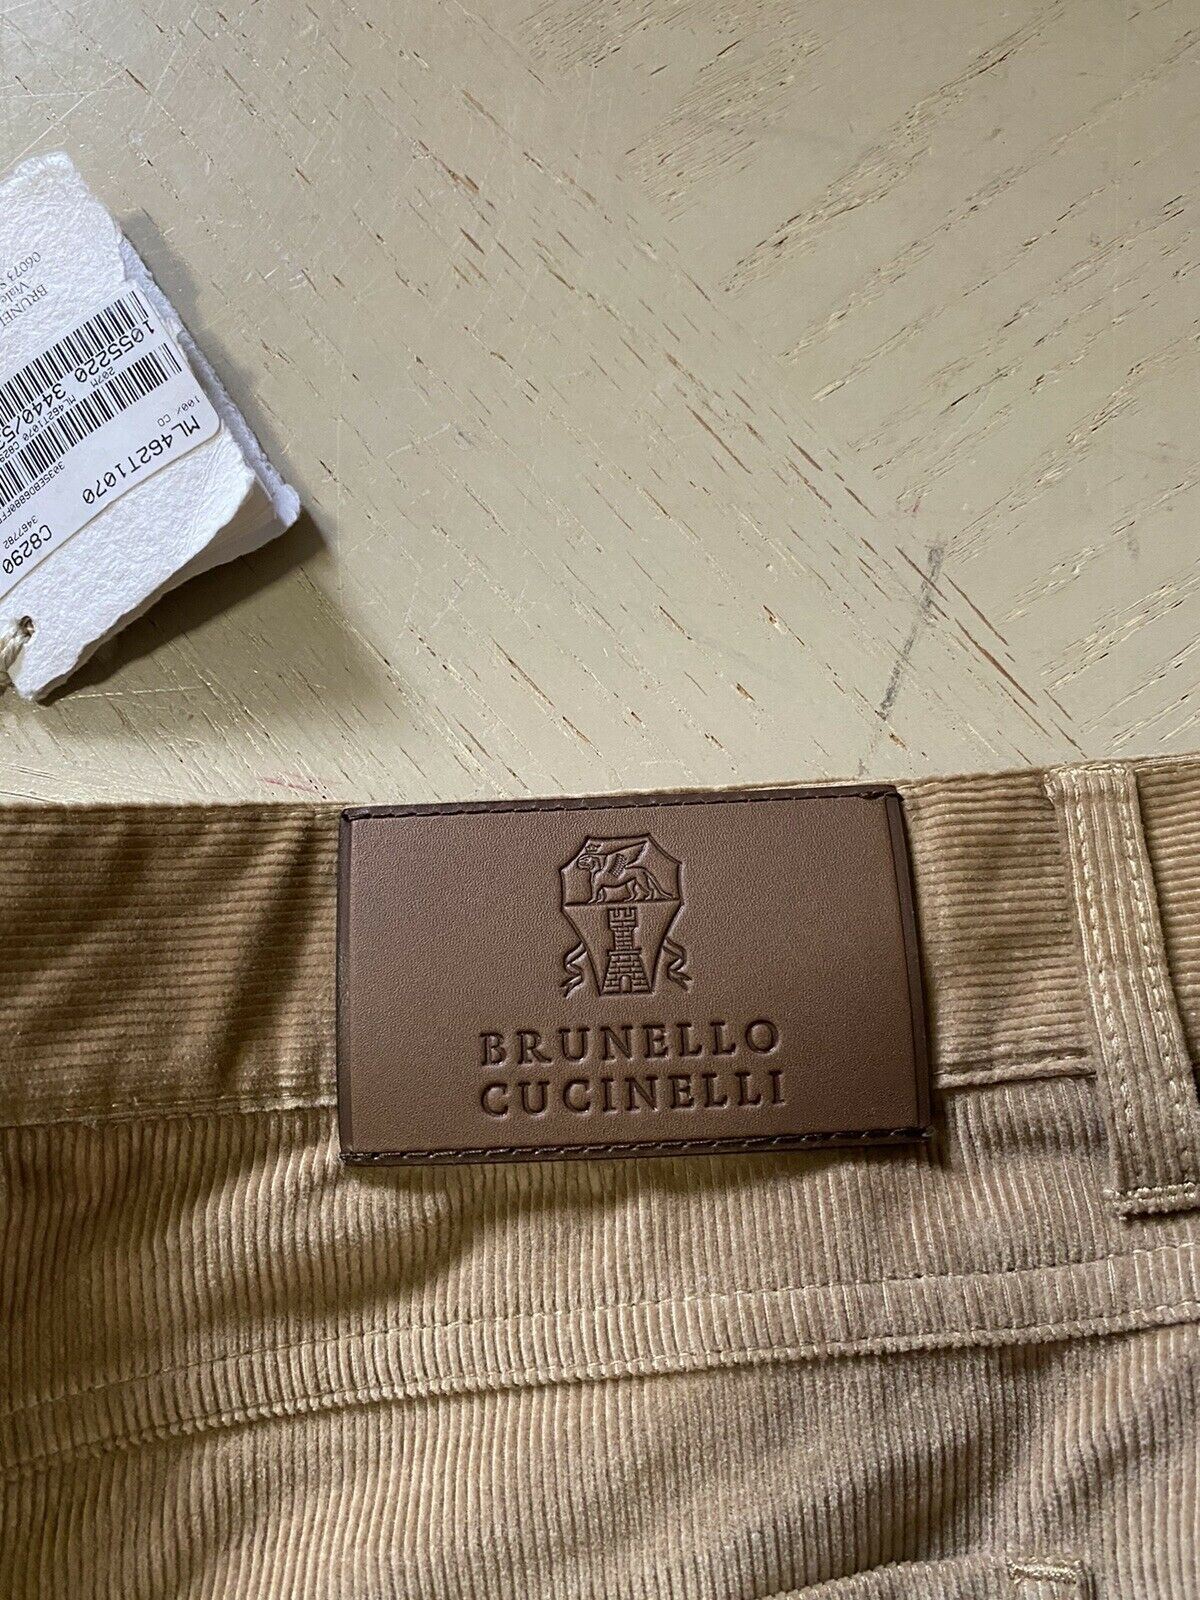 Neu mit Etikett: 1025 $ Brunello Cucinelli Herren Cordsamthose Khaki 38 US/54 Eu Italien